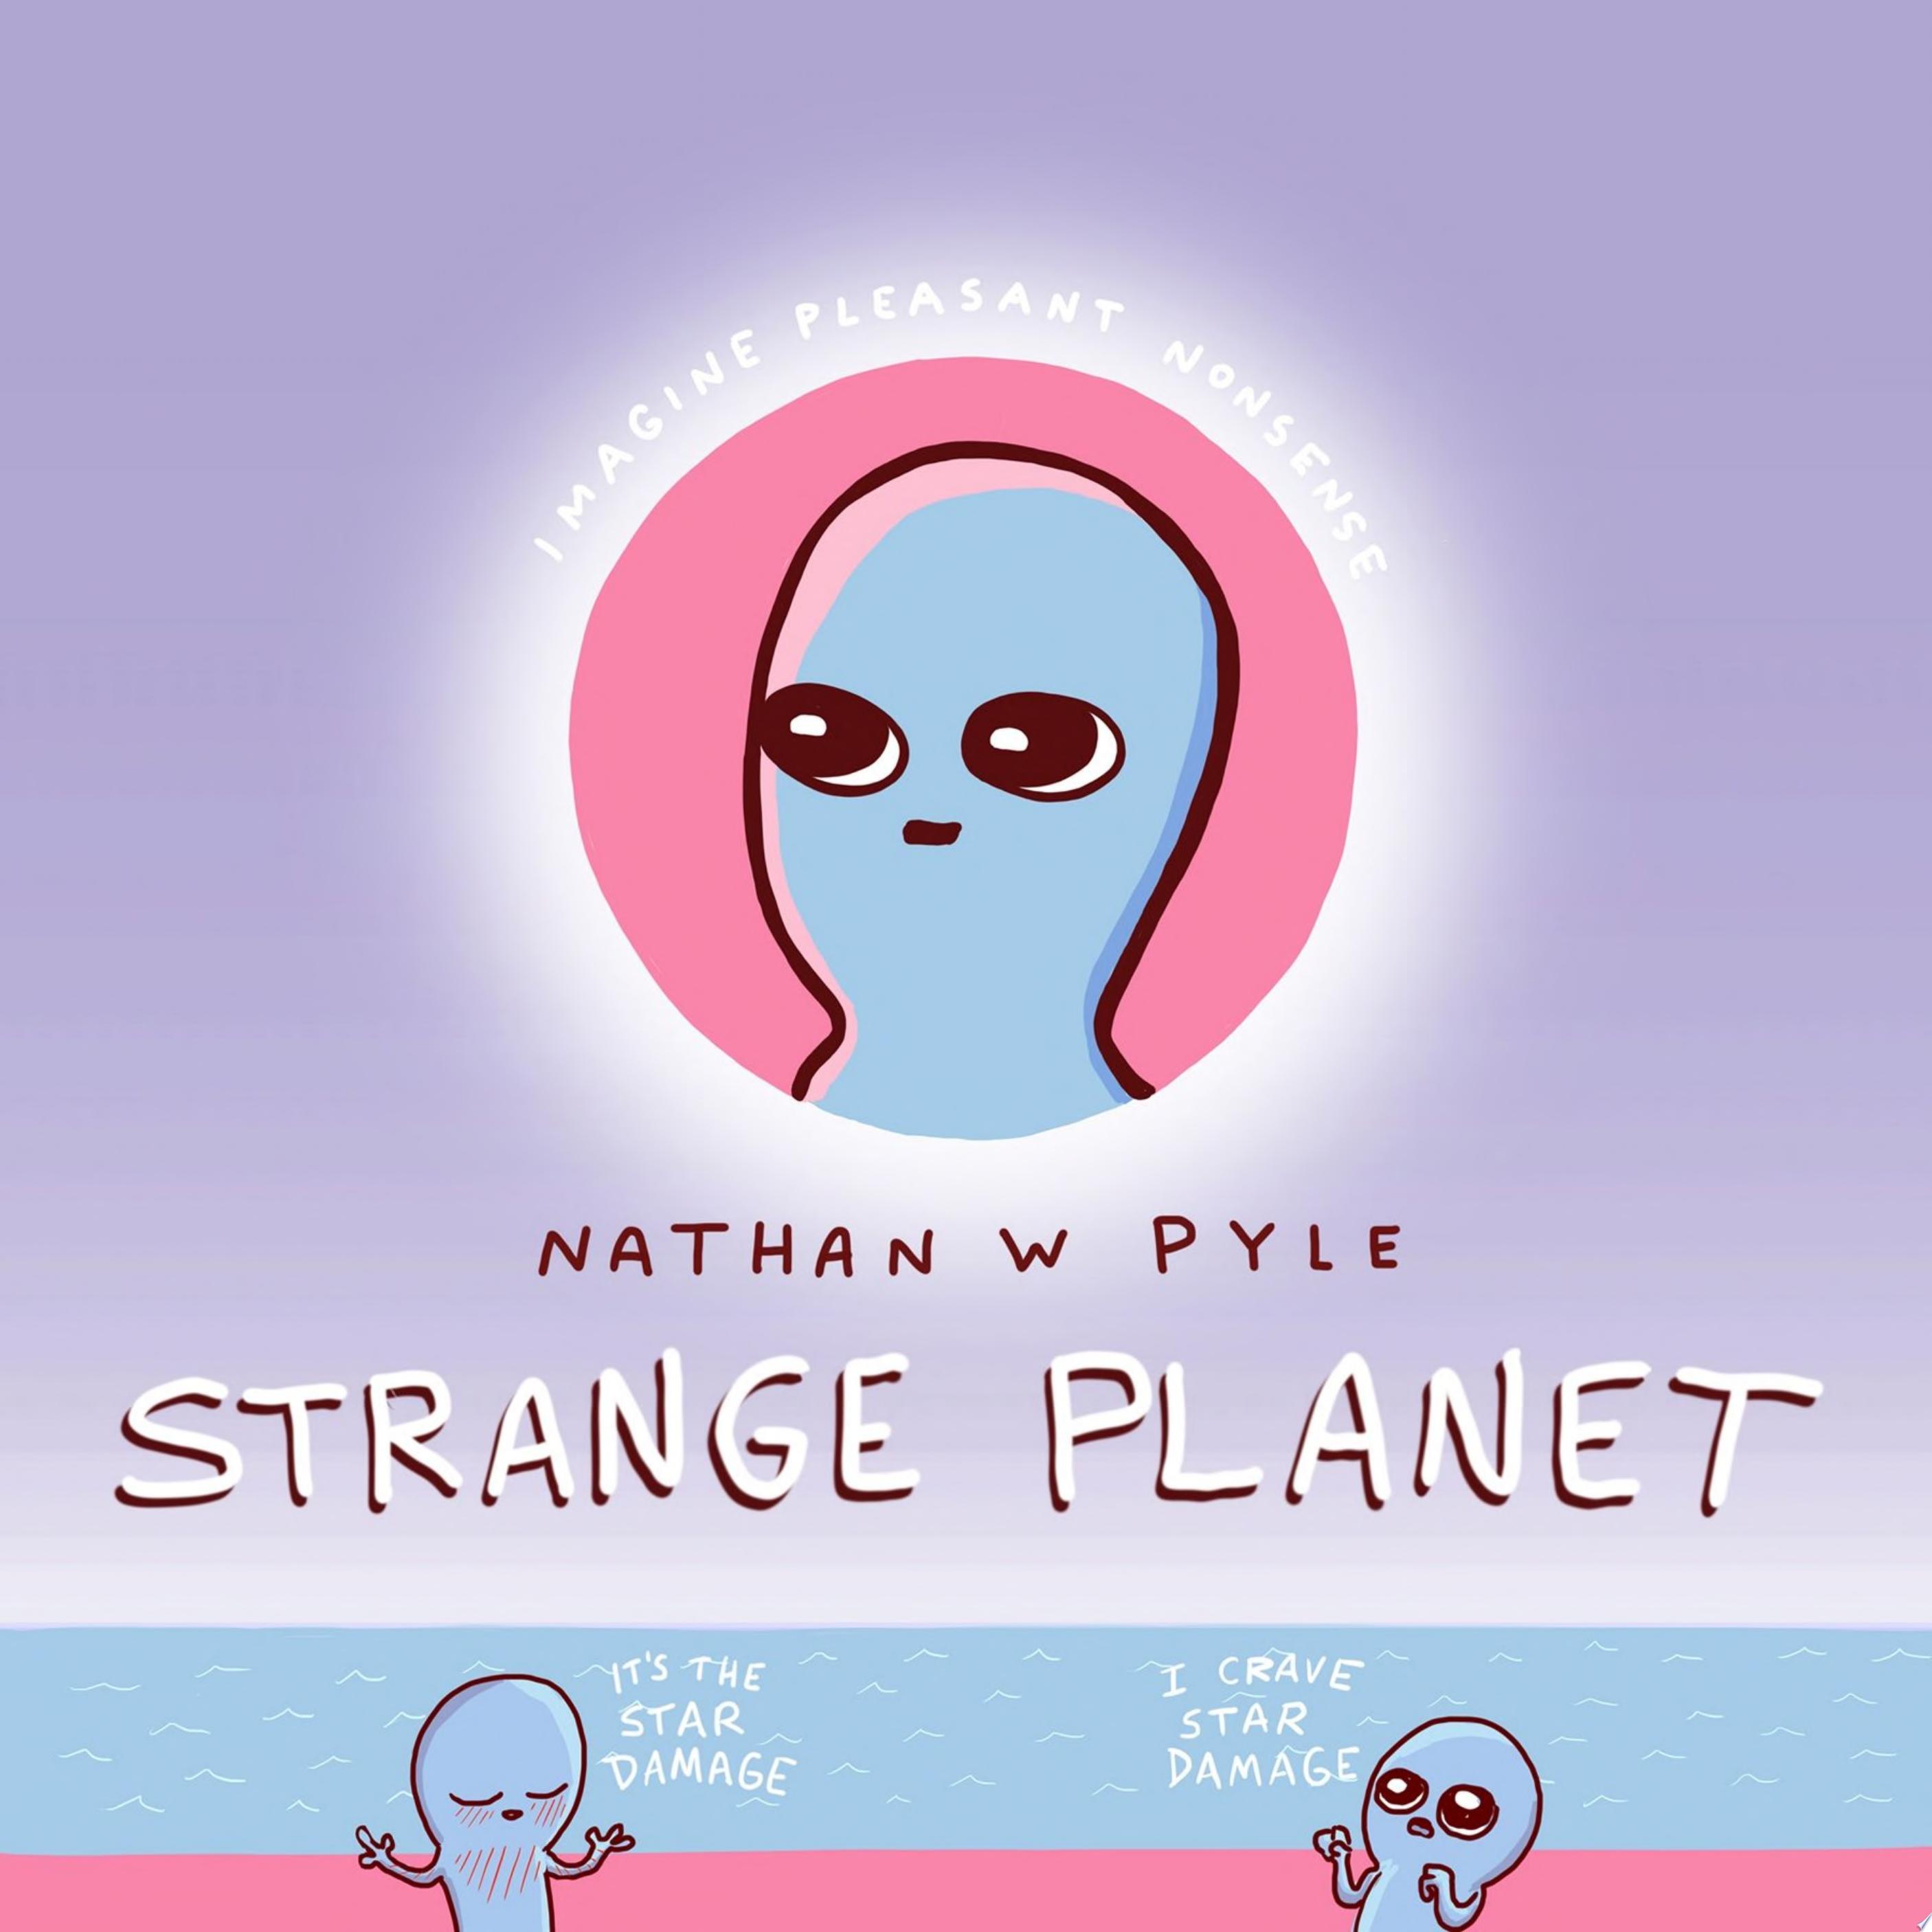 Image for "Strange Planet"